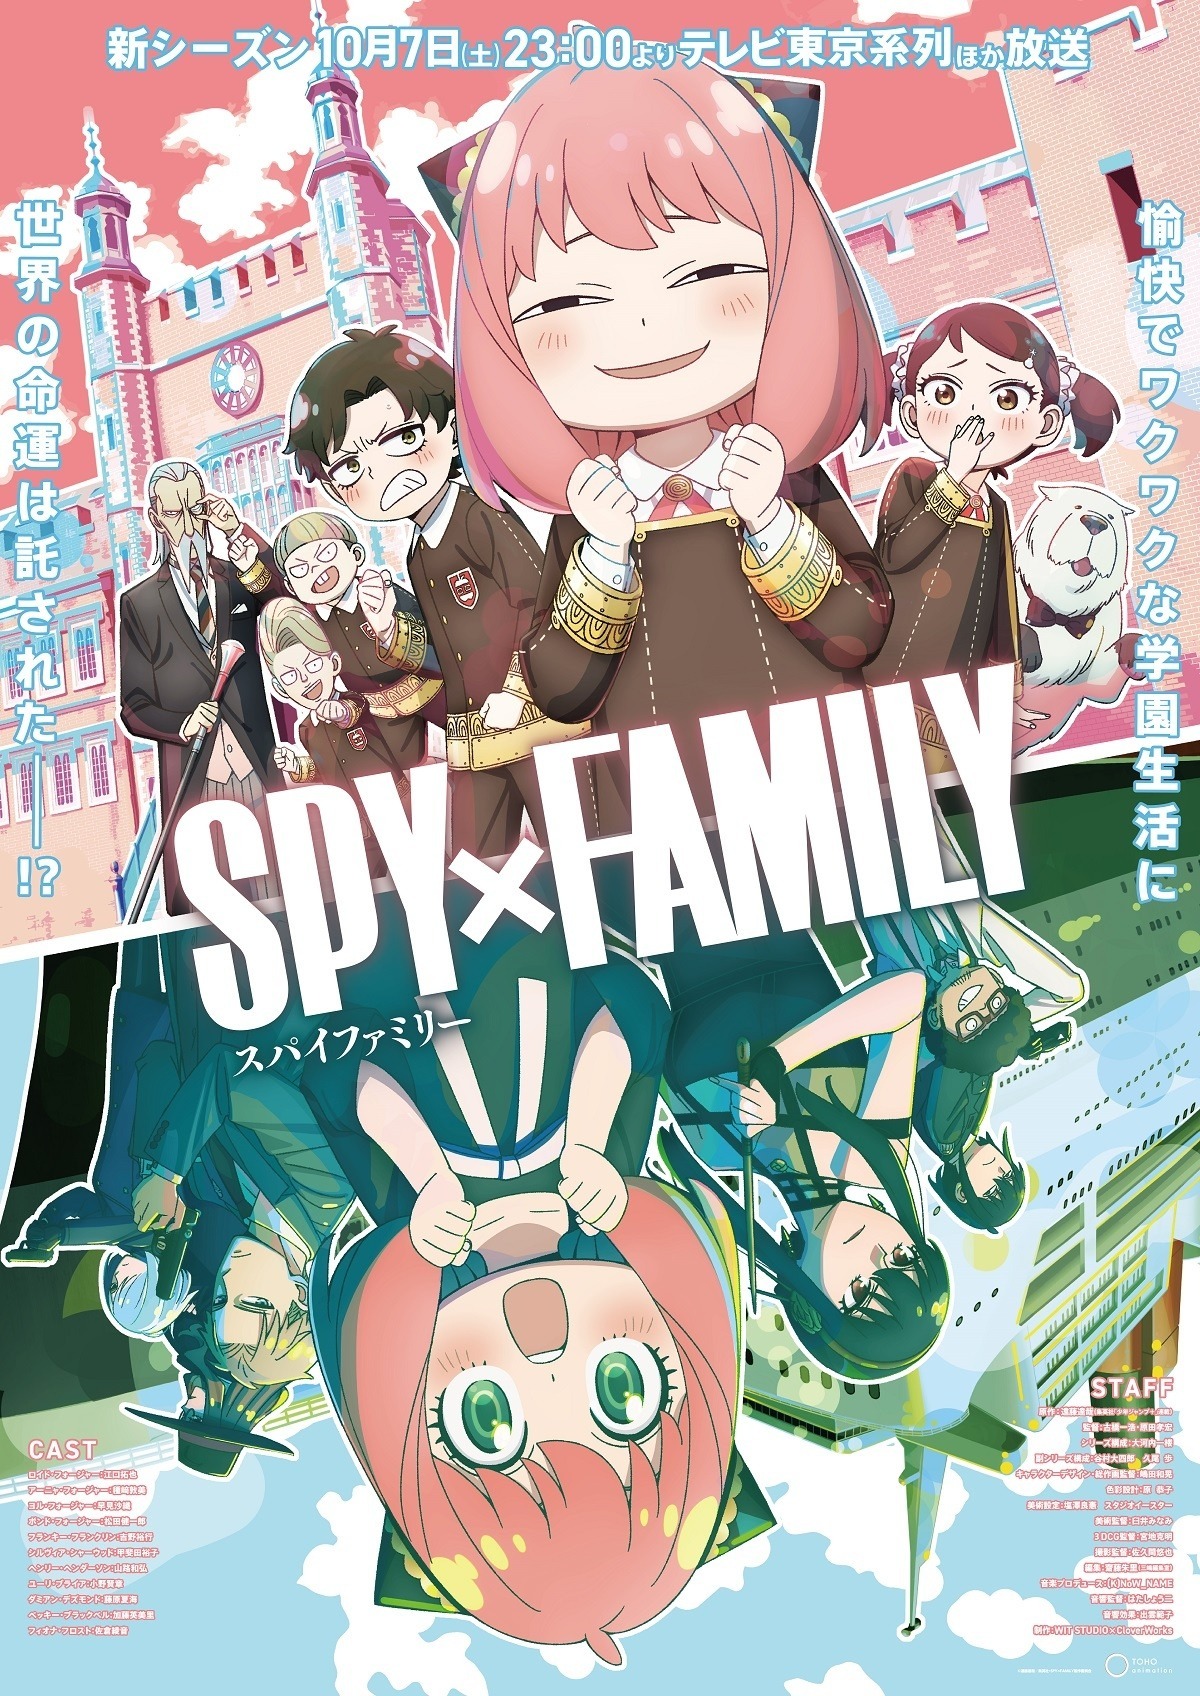 SPY x FAMILY Anime Kicks off Season 2 with Celebratory Artwork -  Crunchyroll News